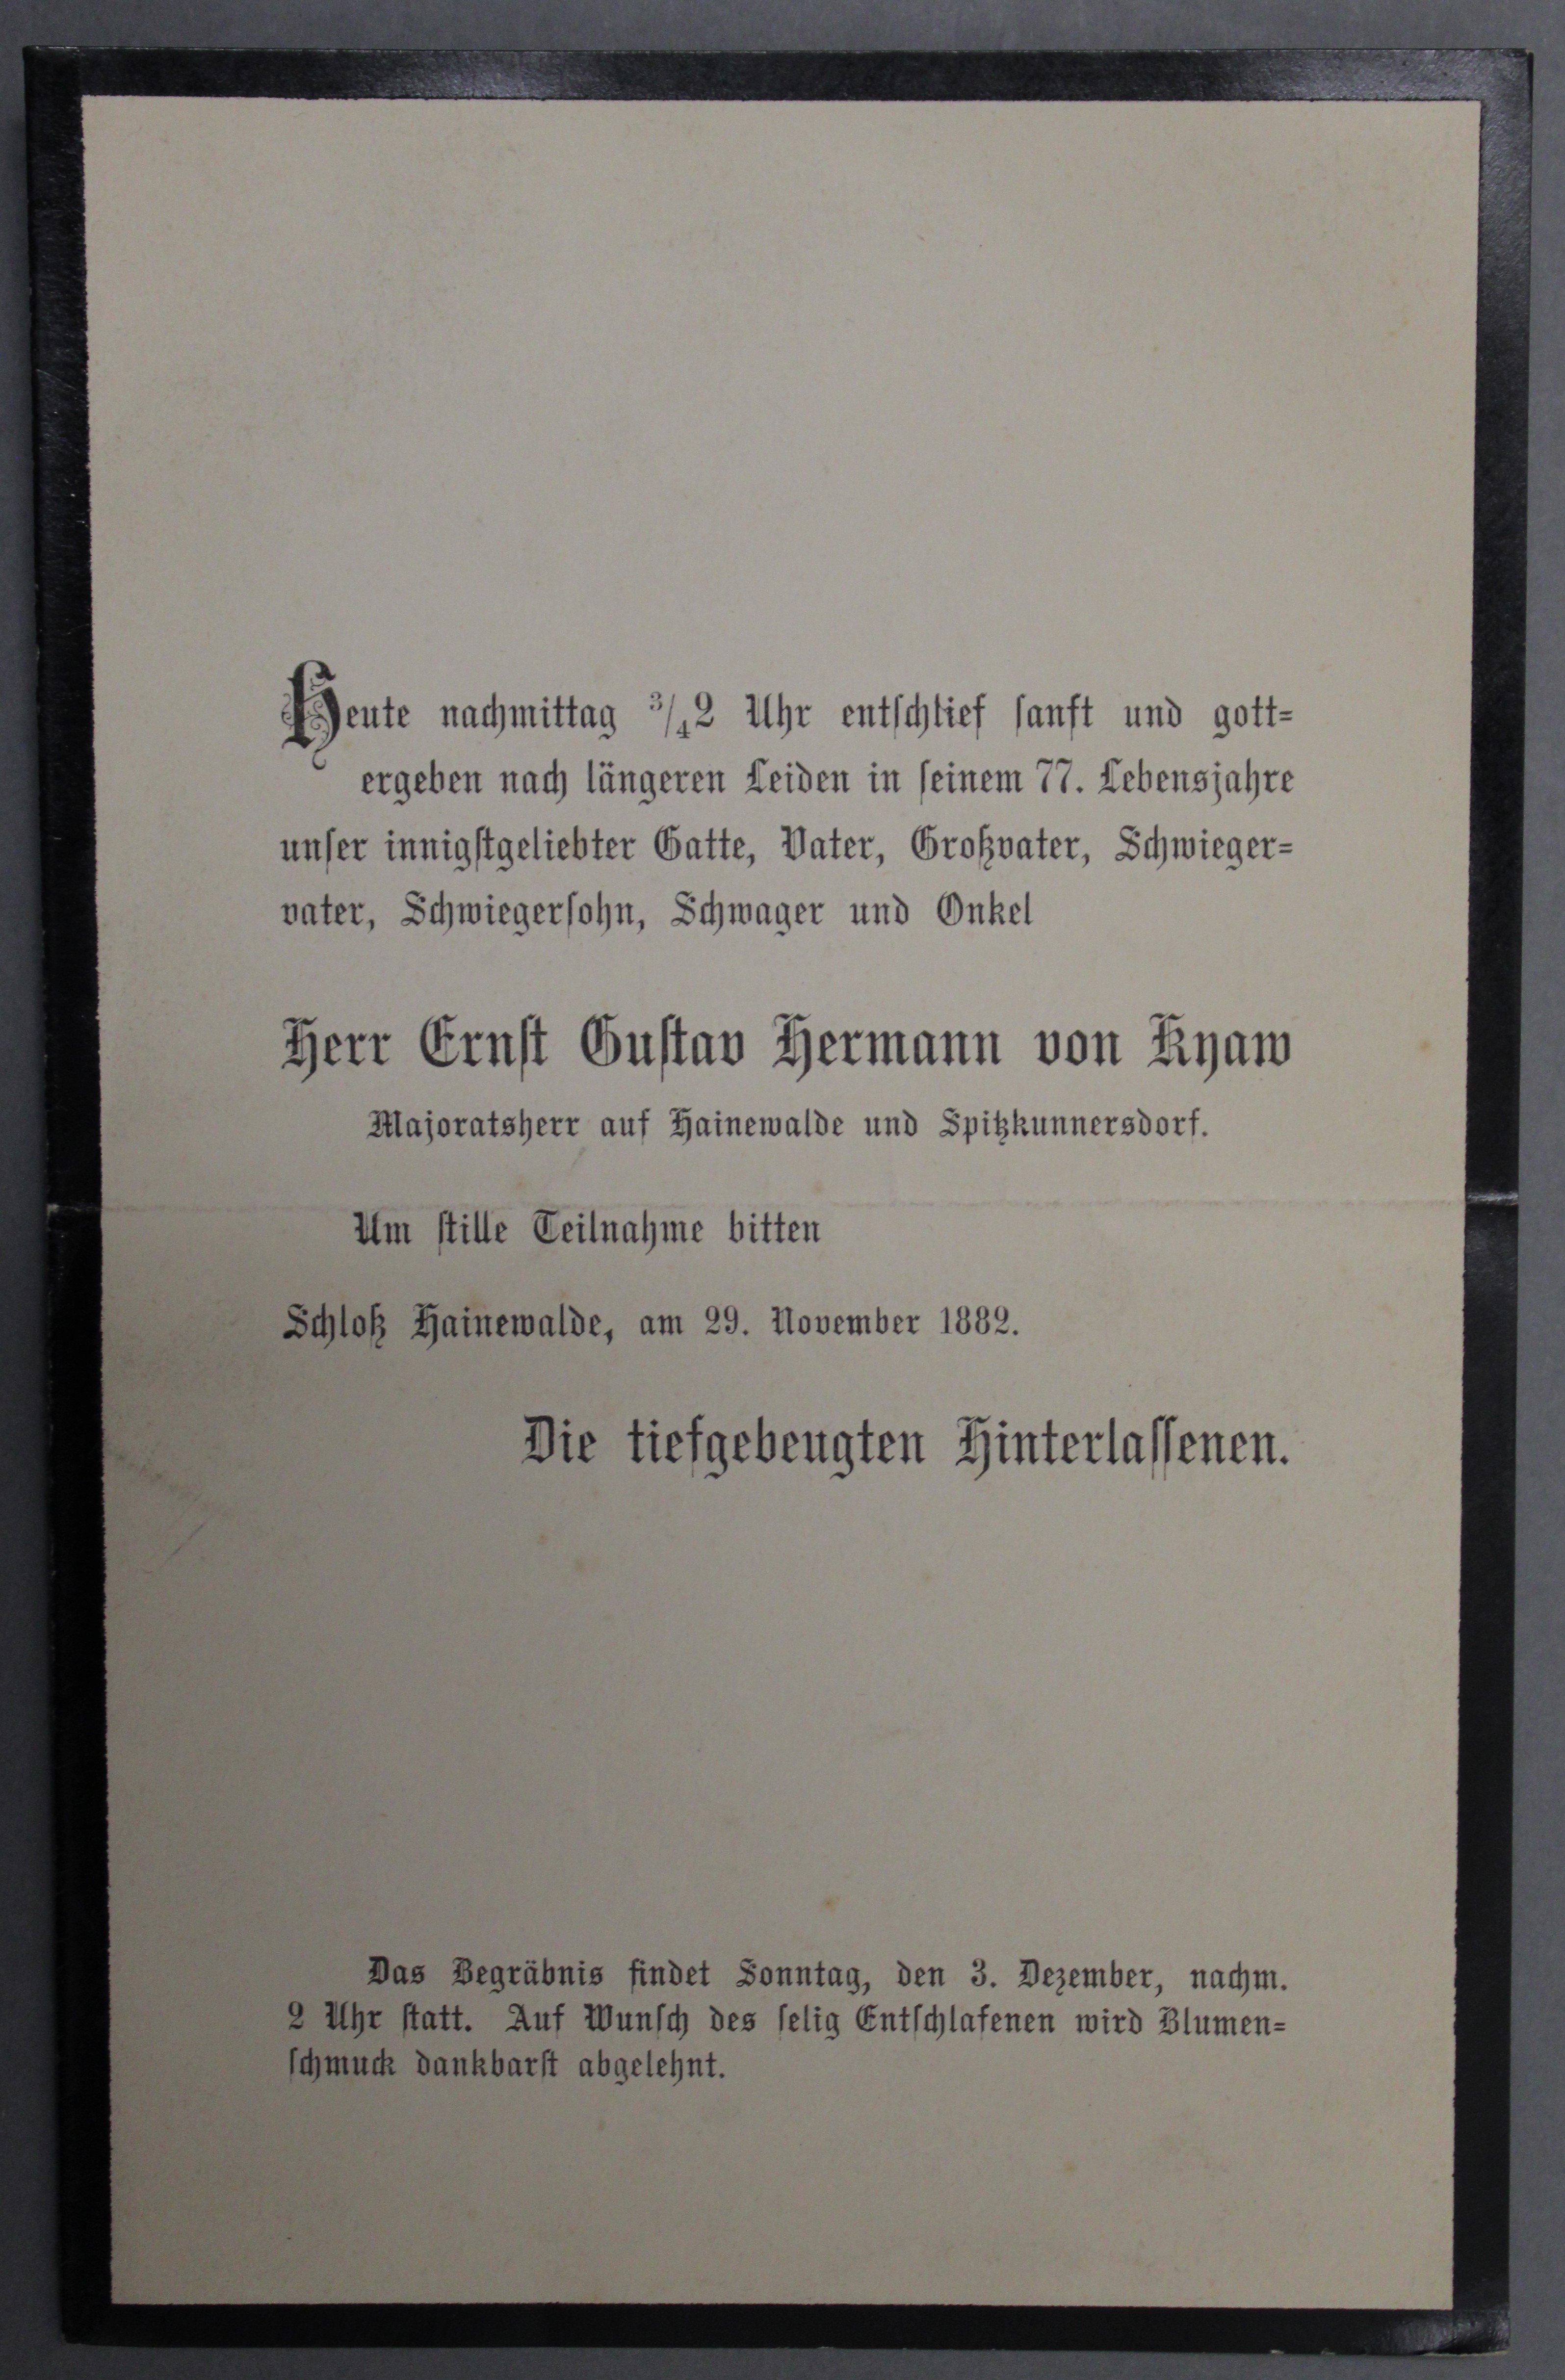 Traueranzeige Ernst Gustav Hermann von Kyaw (Deutsches Damast- und Frottiermuseum CC BY-NC-SA)